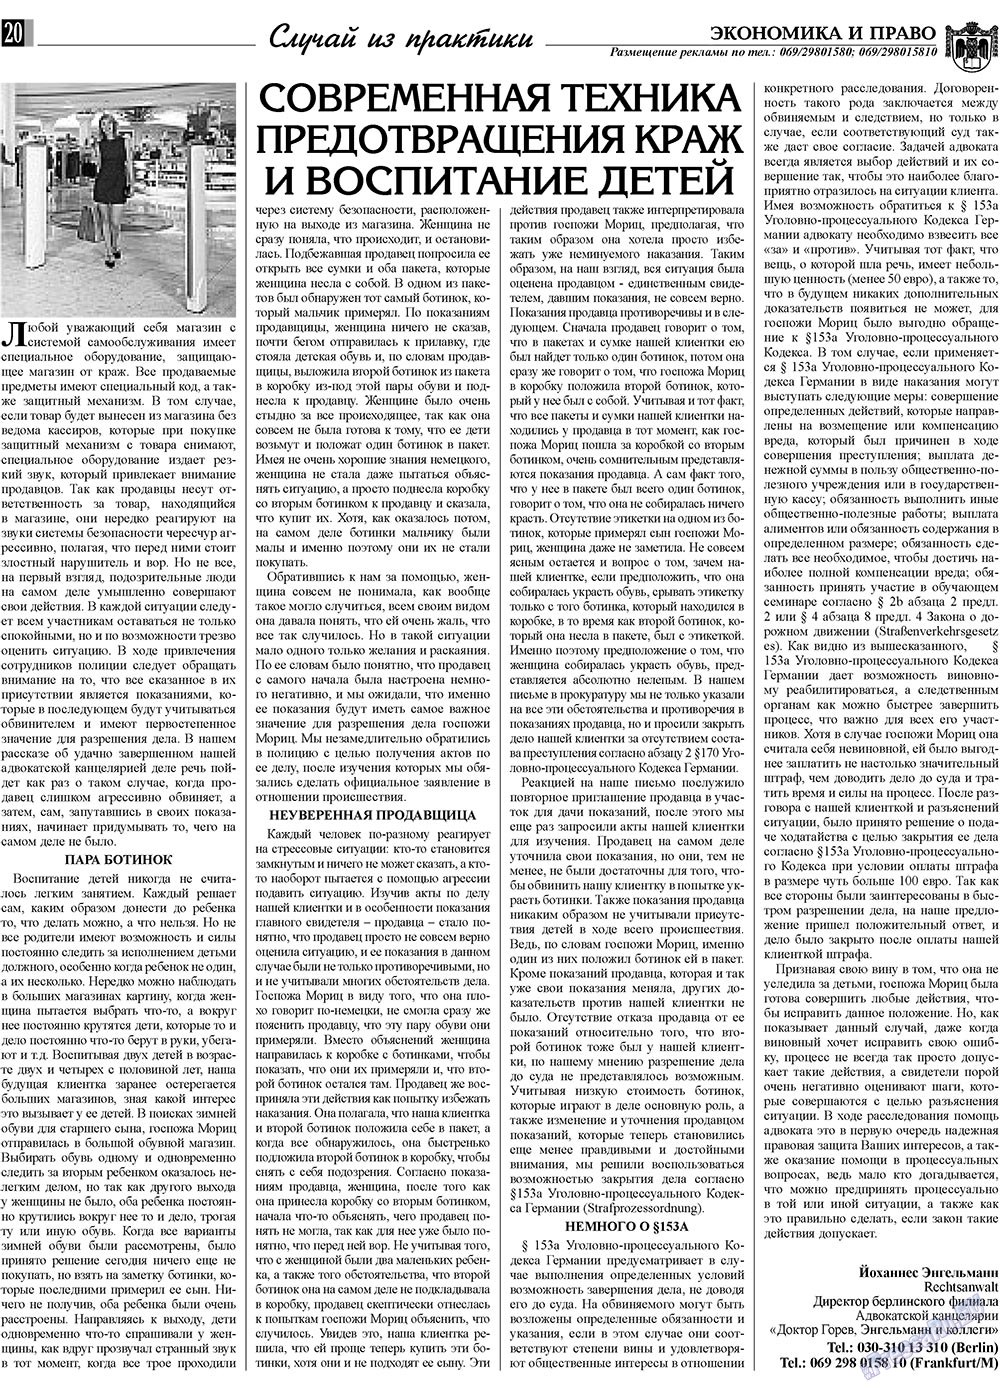 Экономика и право, газета. 2009 №7 стр.20